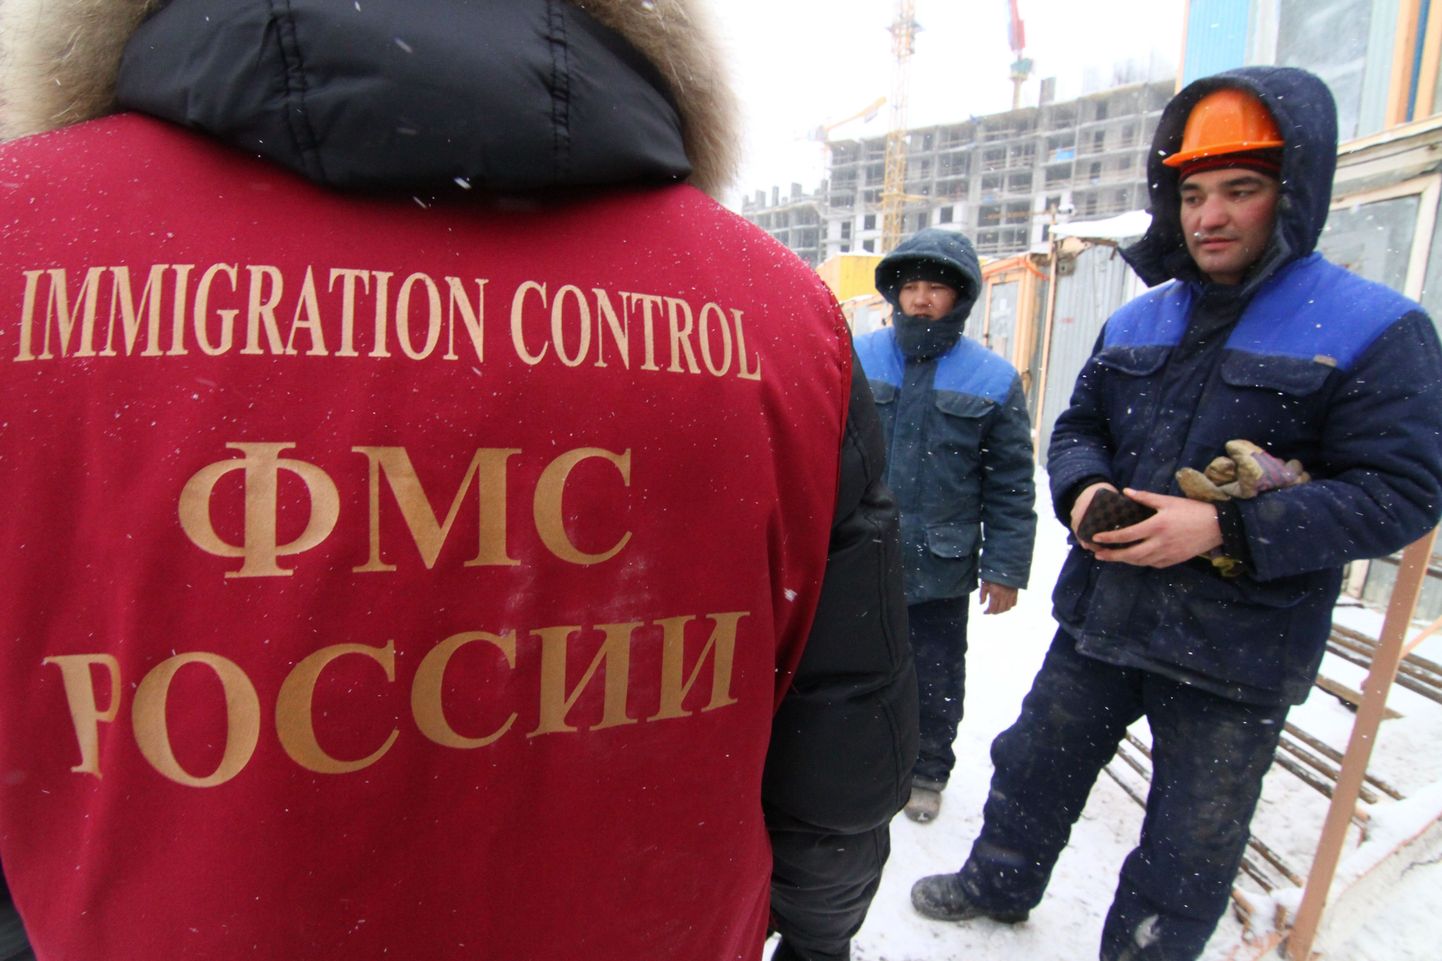 Vene migratsiooniameti töötaja kontrollib Moskva ühel ehitusplatsil tööliste dokumente.